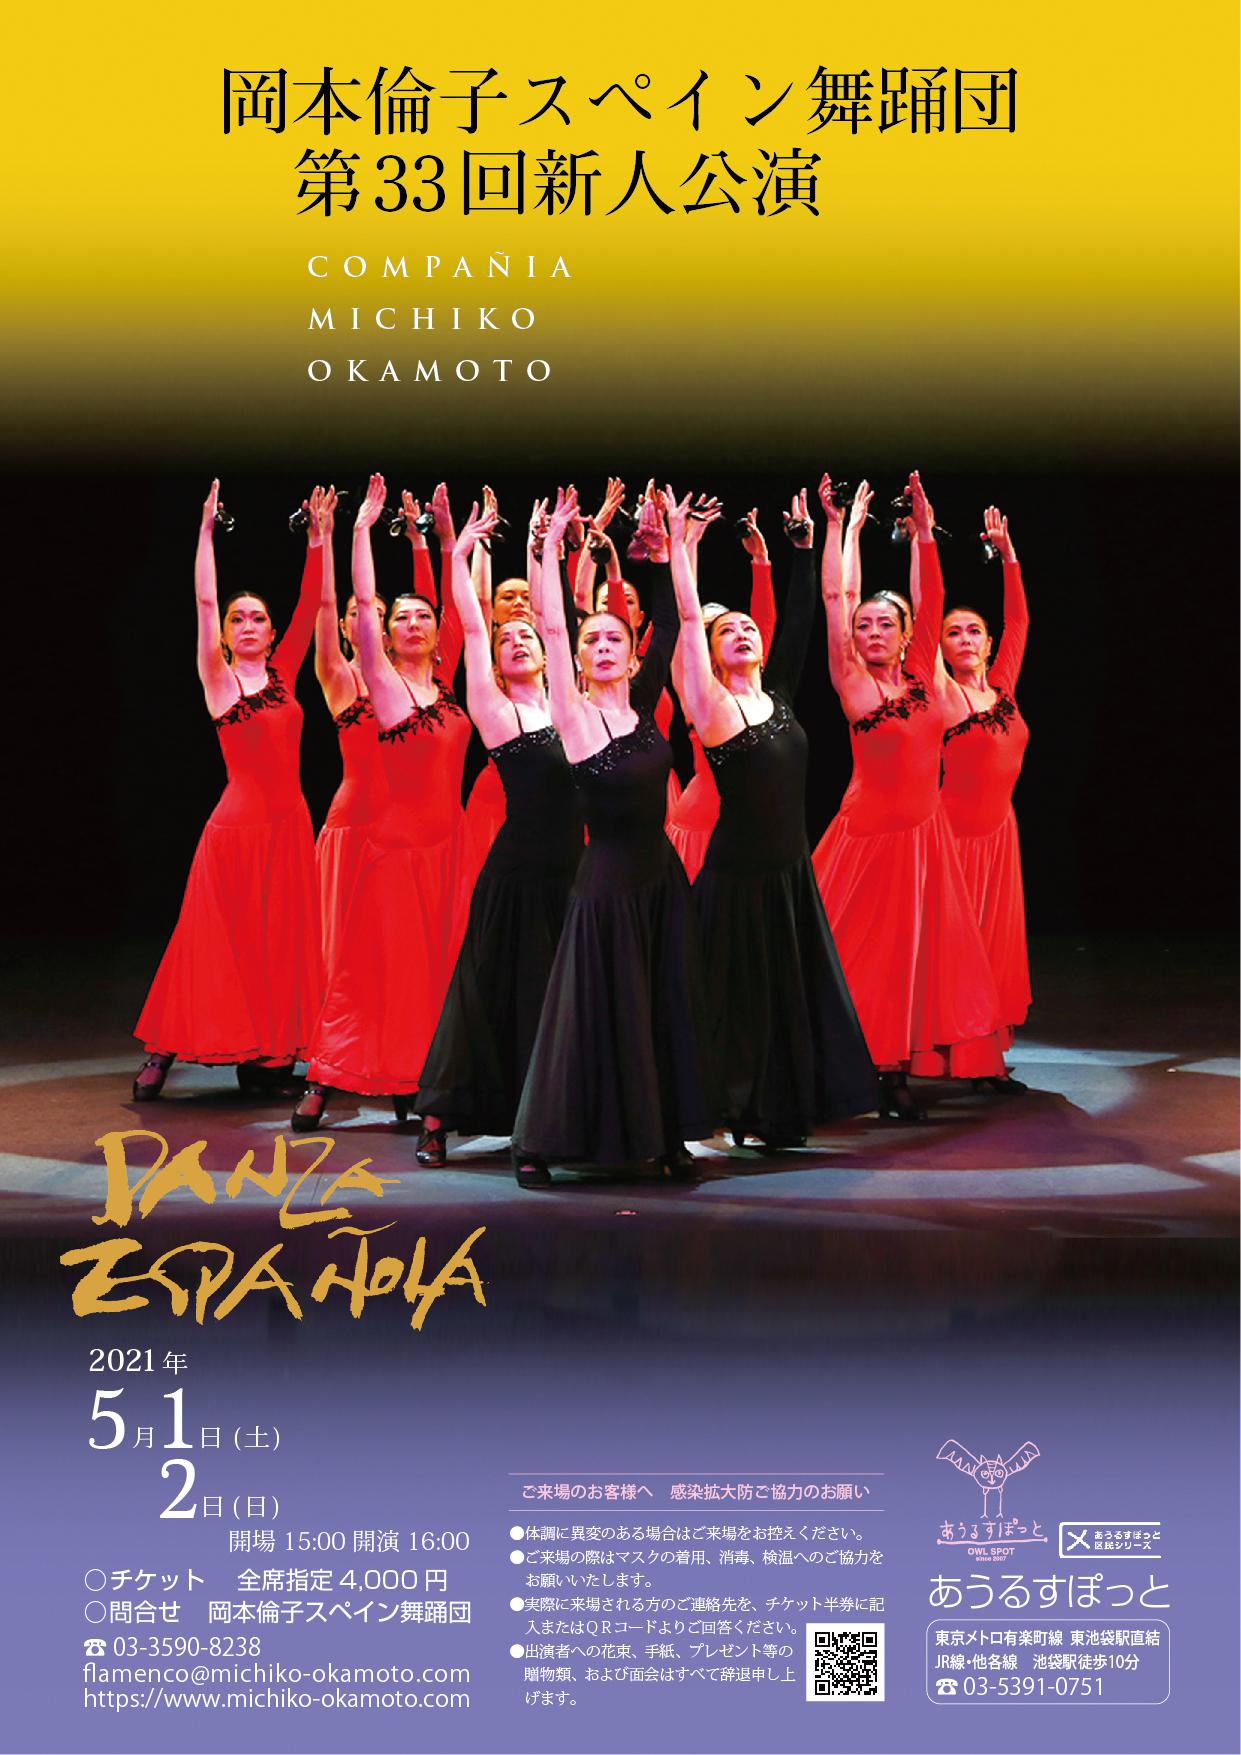 岡本倫子スペイン舞踊団 第33回新人公演 配信視聴のご案内